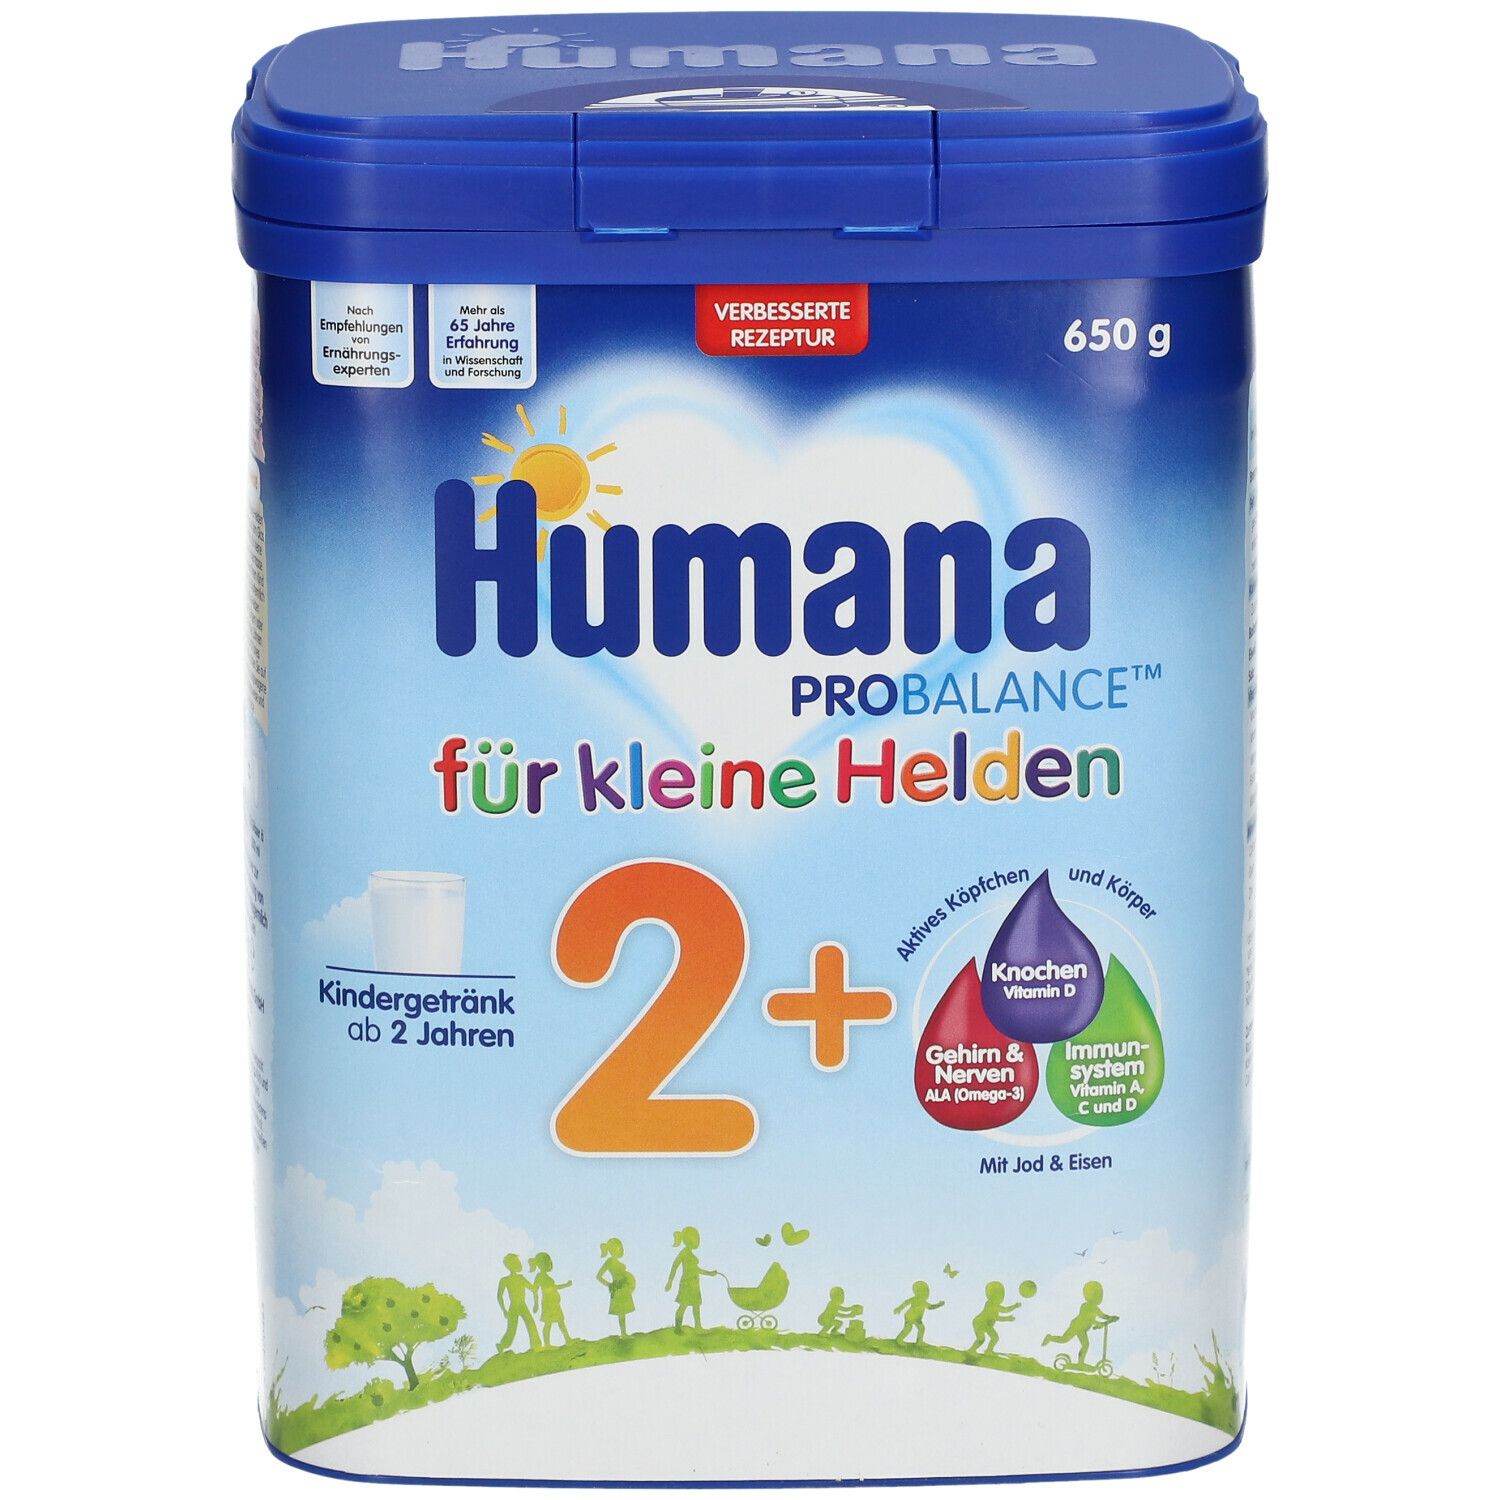 Humana PROBALANCE™ 2+ Für kleine Helden